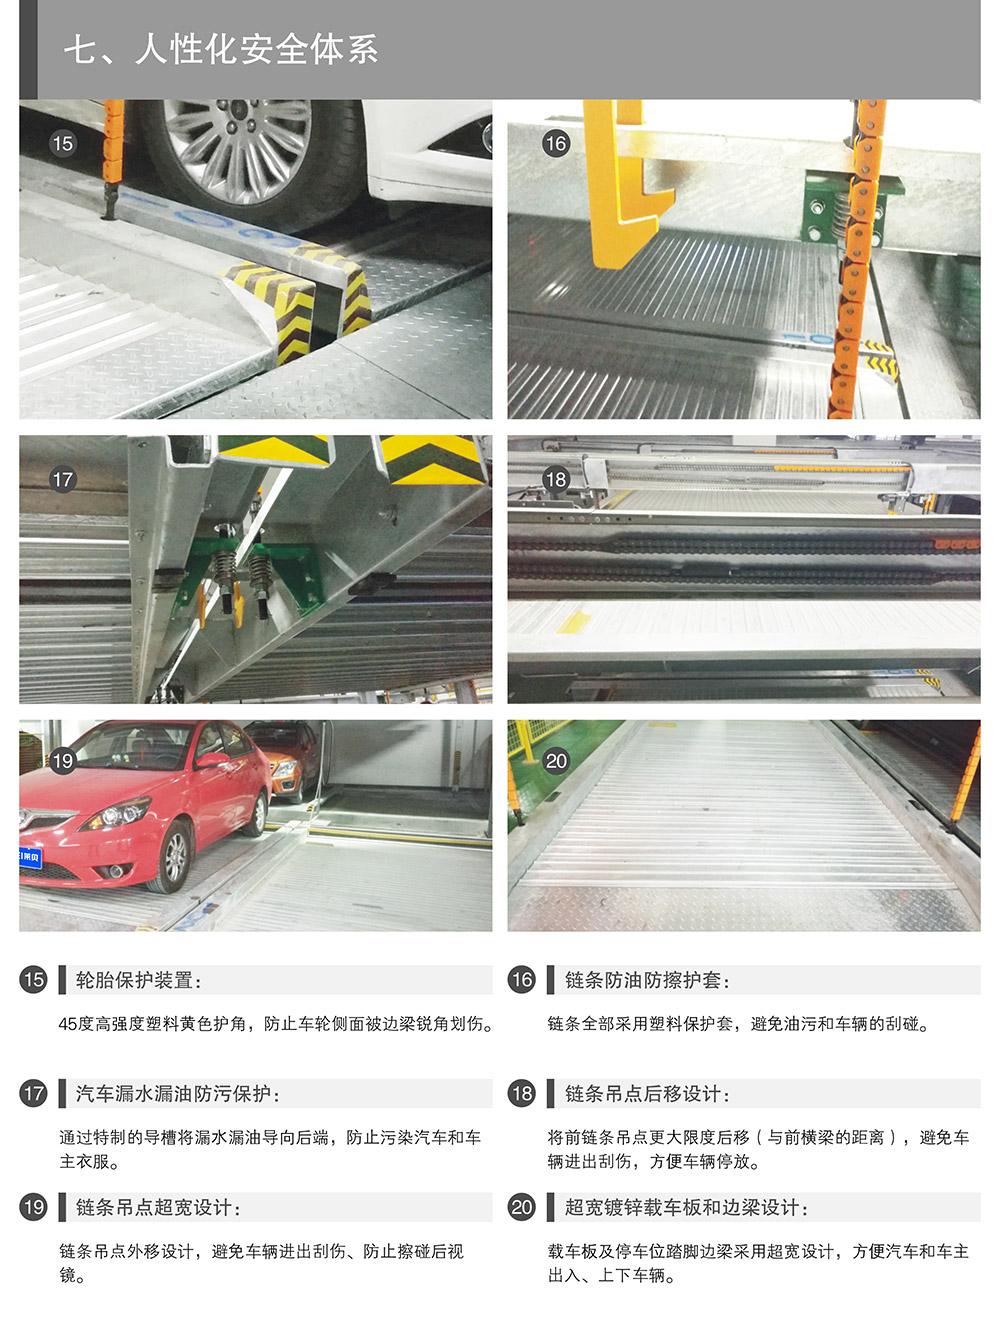 贵州贵阳四至六层PSH4-6升降横移式立体停车设备人性化安全体系.jpg